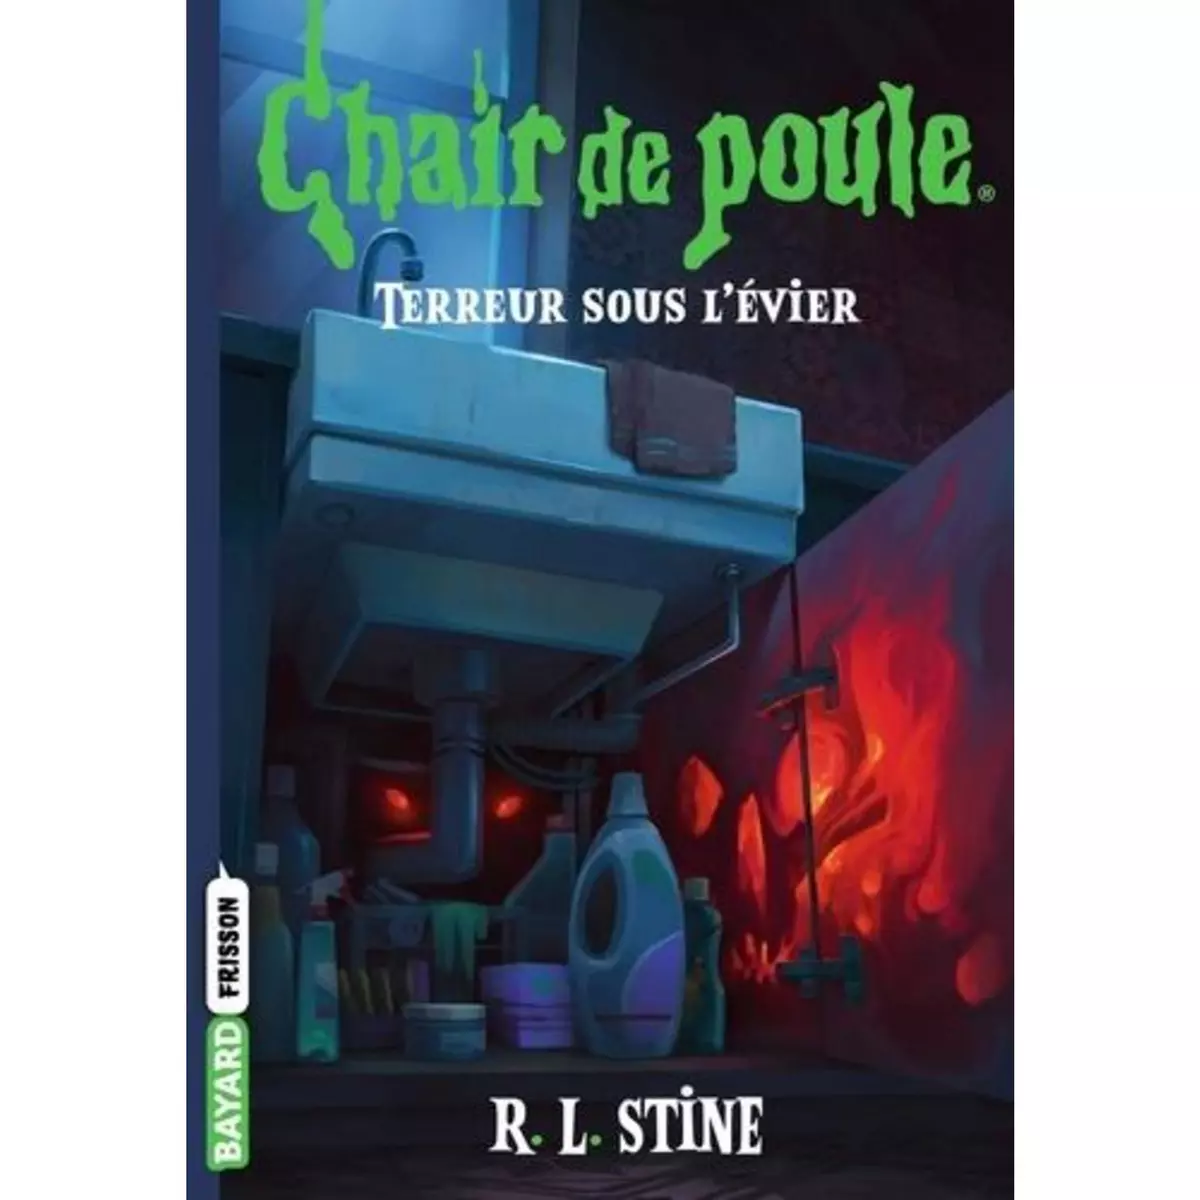  CHAIR DE POULE TOME 12 : TERREUR SOUS L'EVIER, Stine R. L.